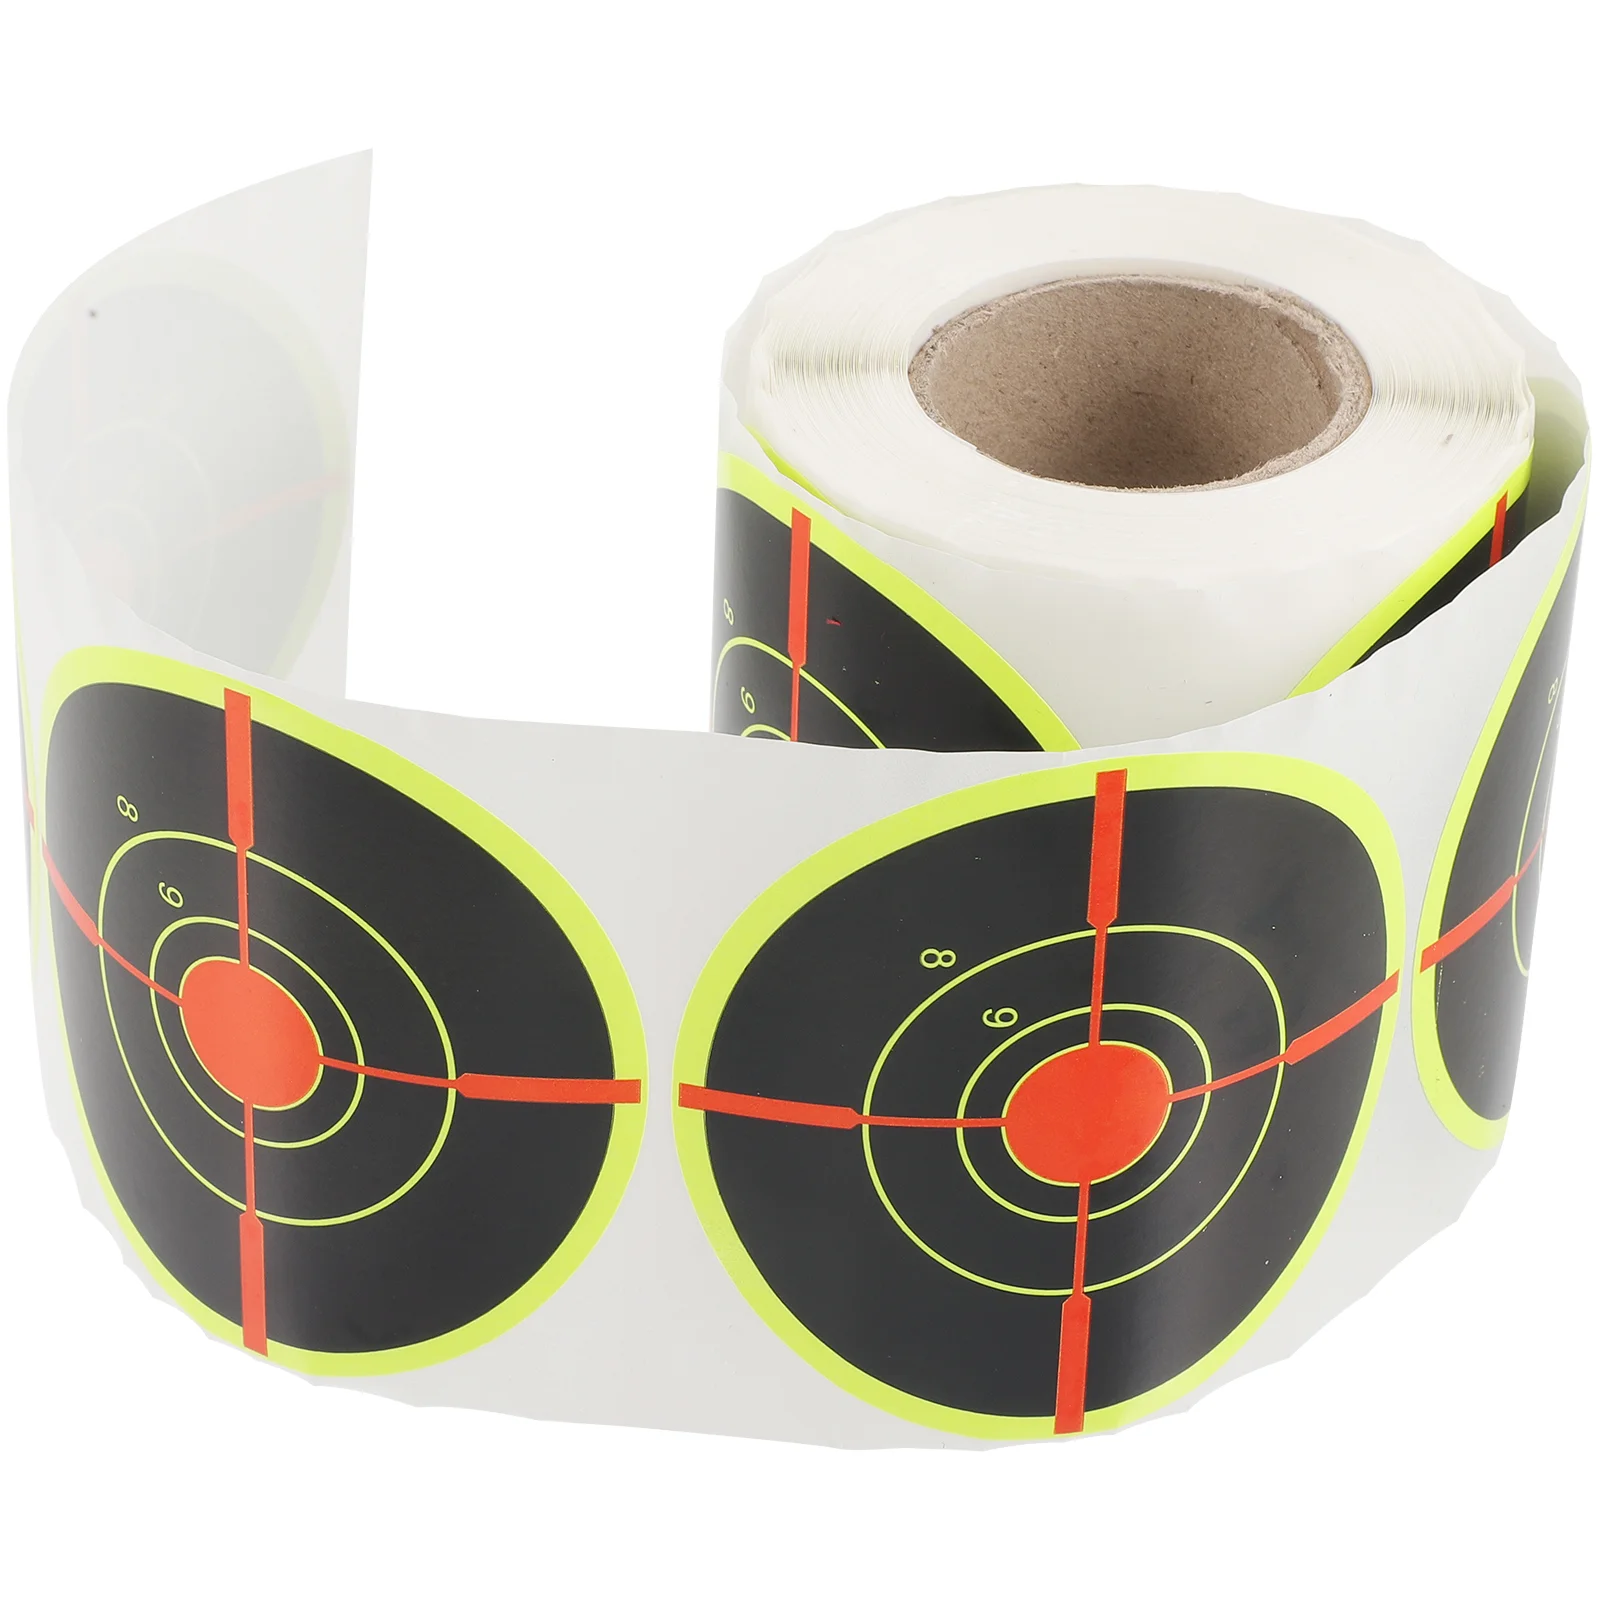 

Наклейка Bullseye для стрельбы из лука, круглые этикетки для стрельбы из лука, практичные профессиональные круглые наклейки